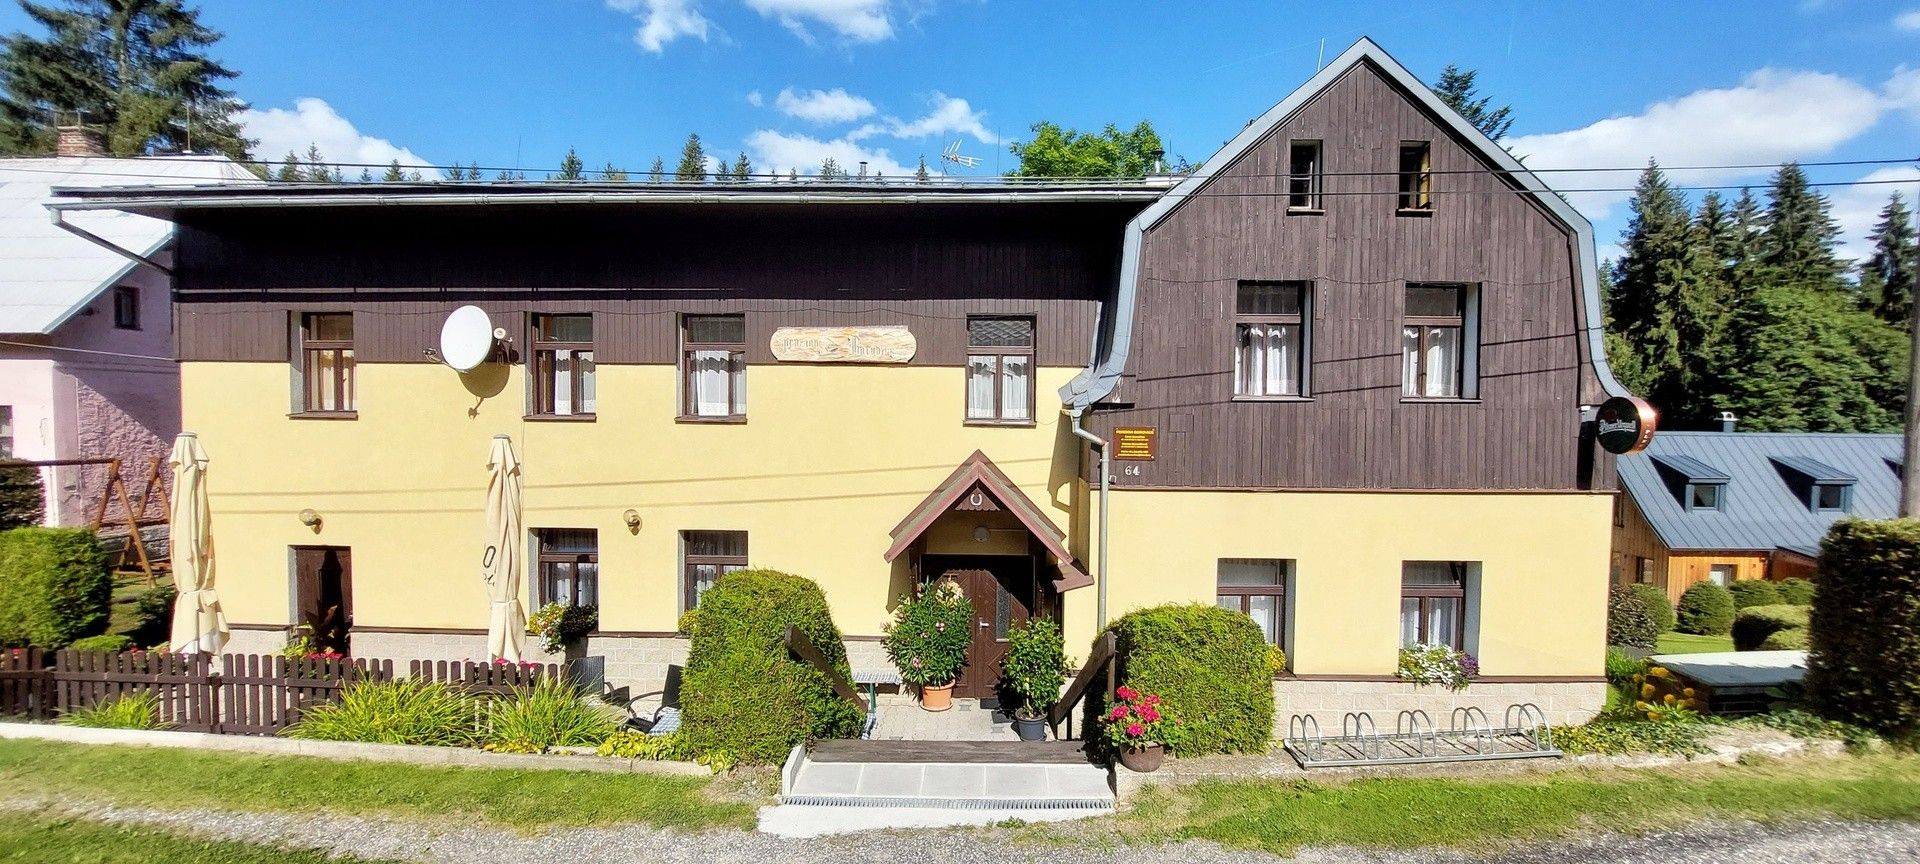 Ubytovací zařízení, Karlov, Josefův Důl, 389 m²